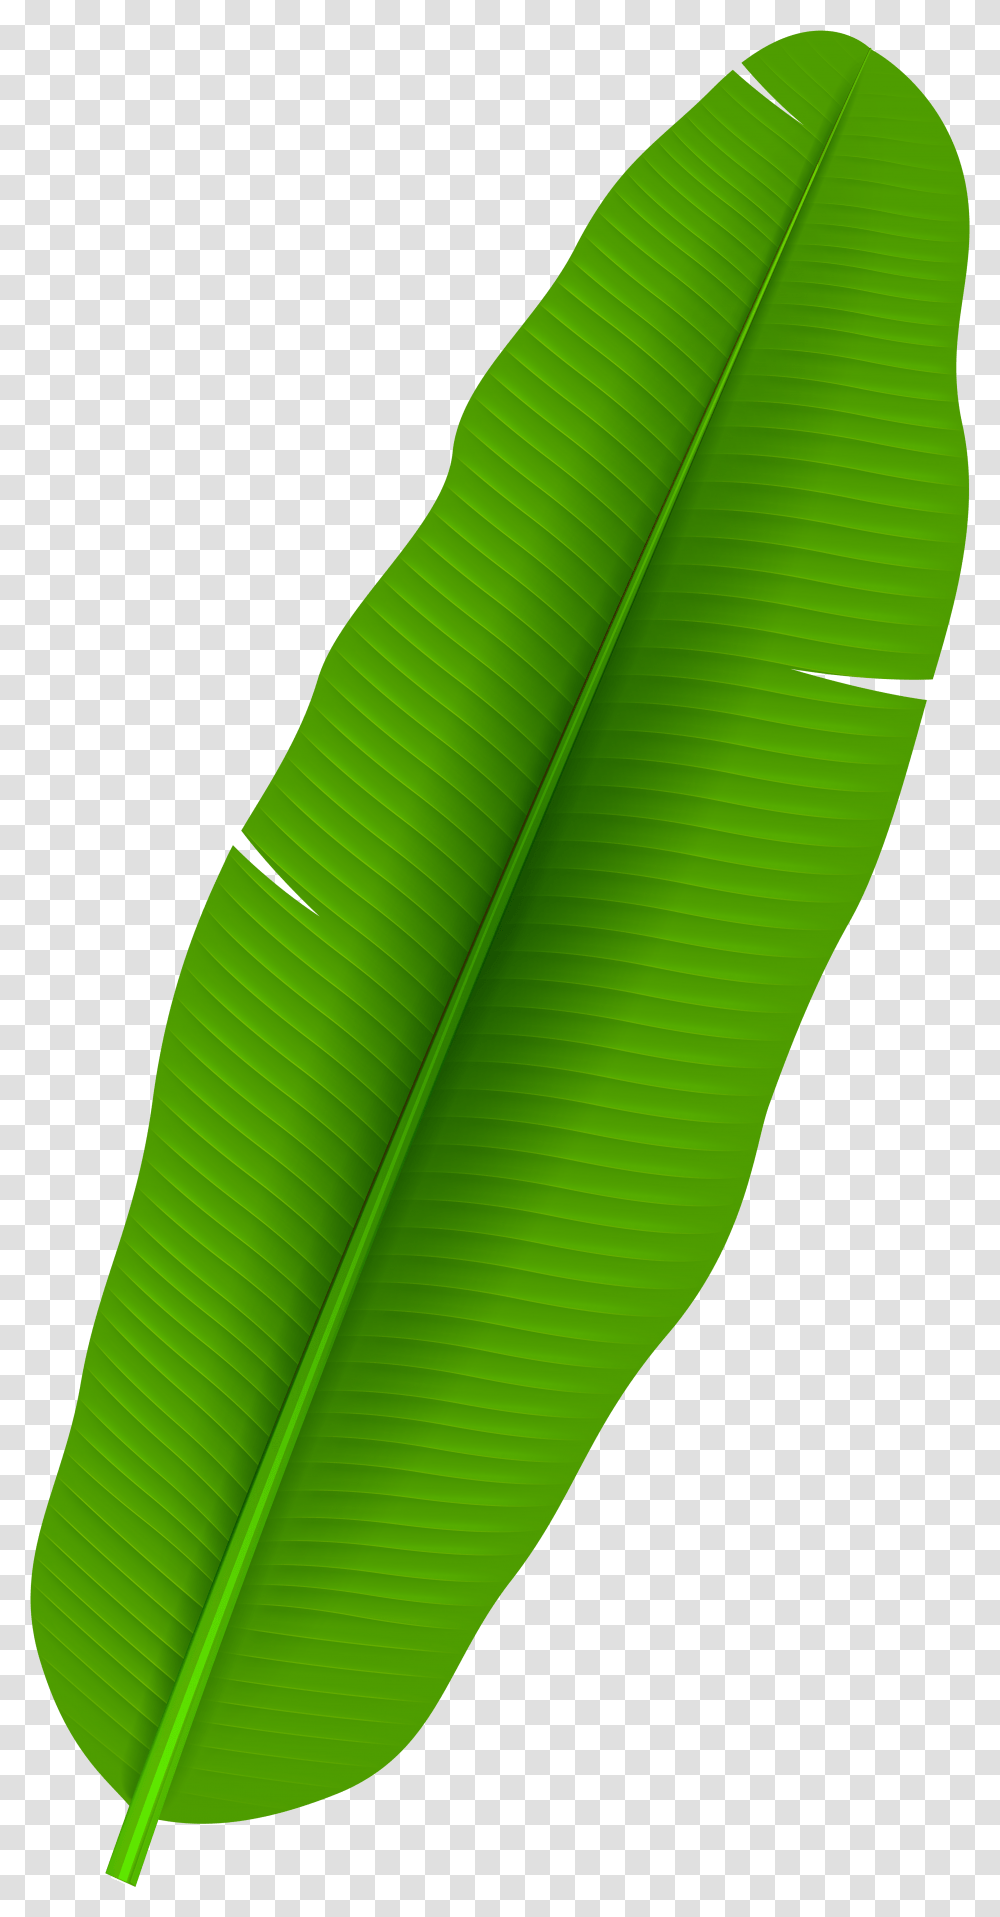 Palm Leaf Clip Art Banana Leaf Clipart Transparent Png